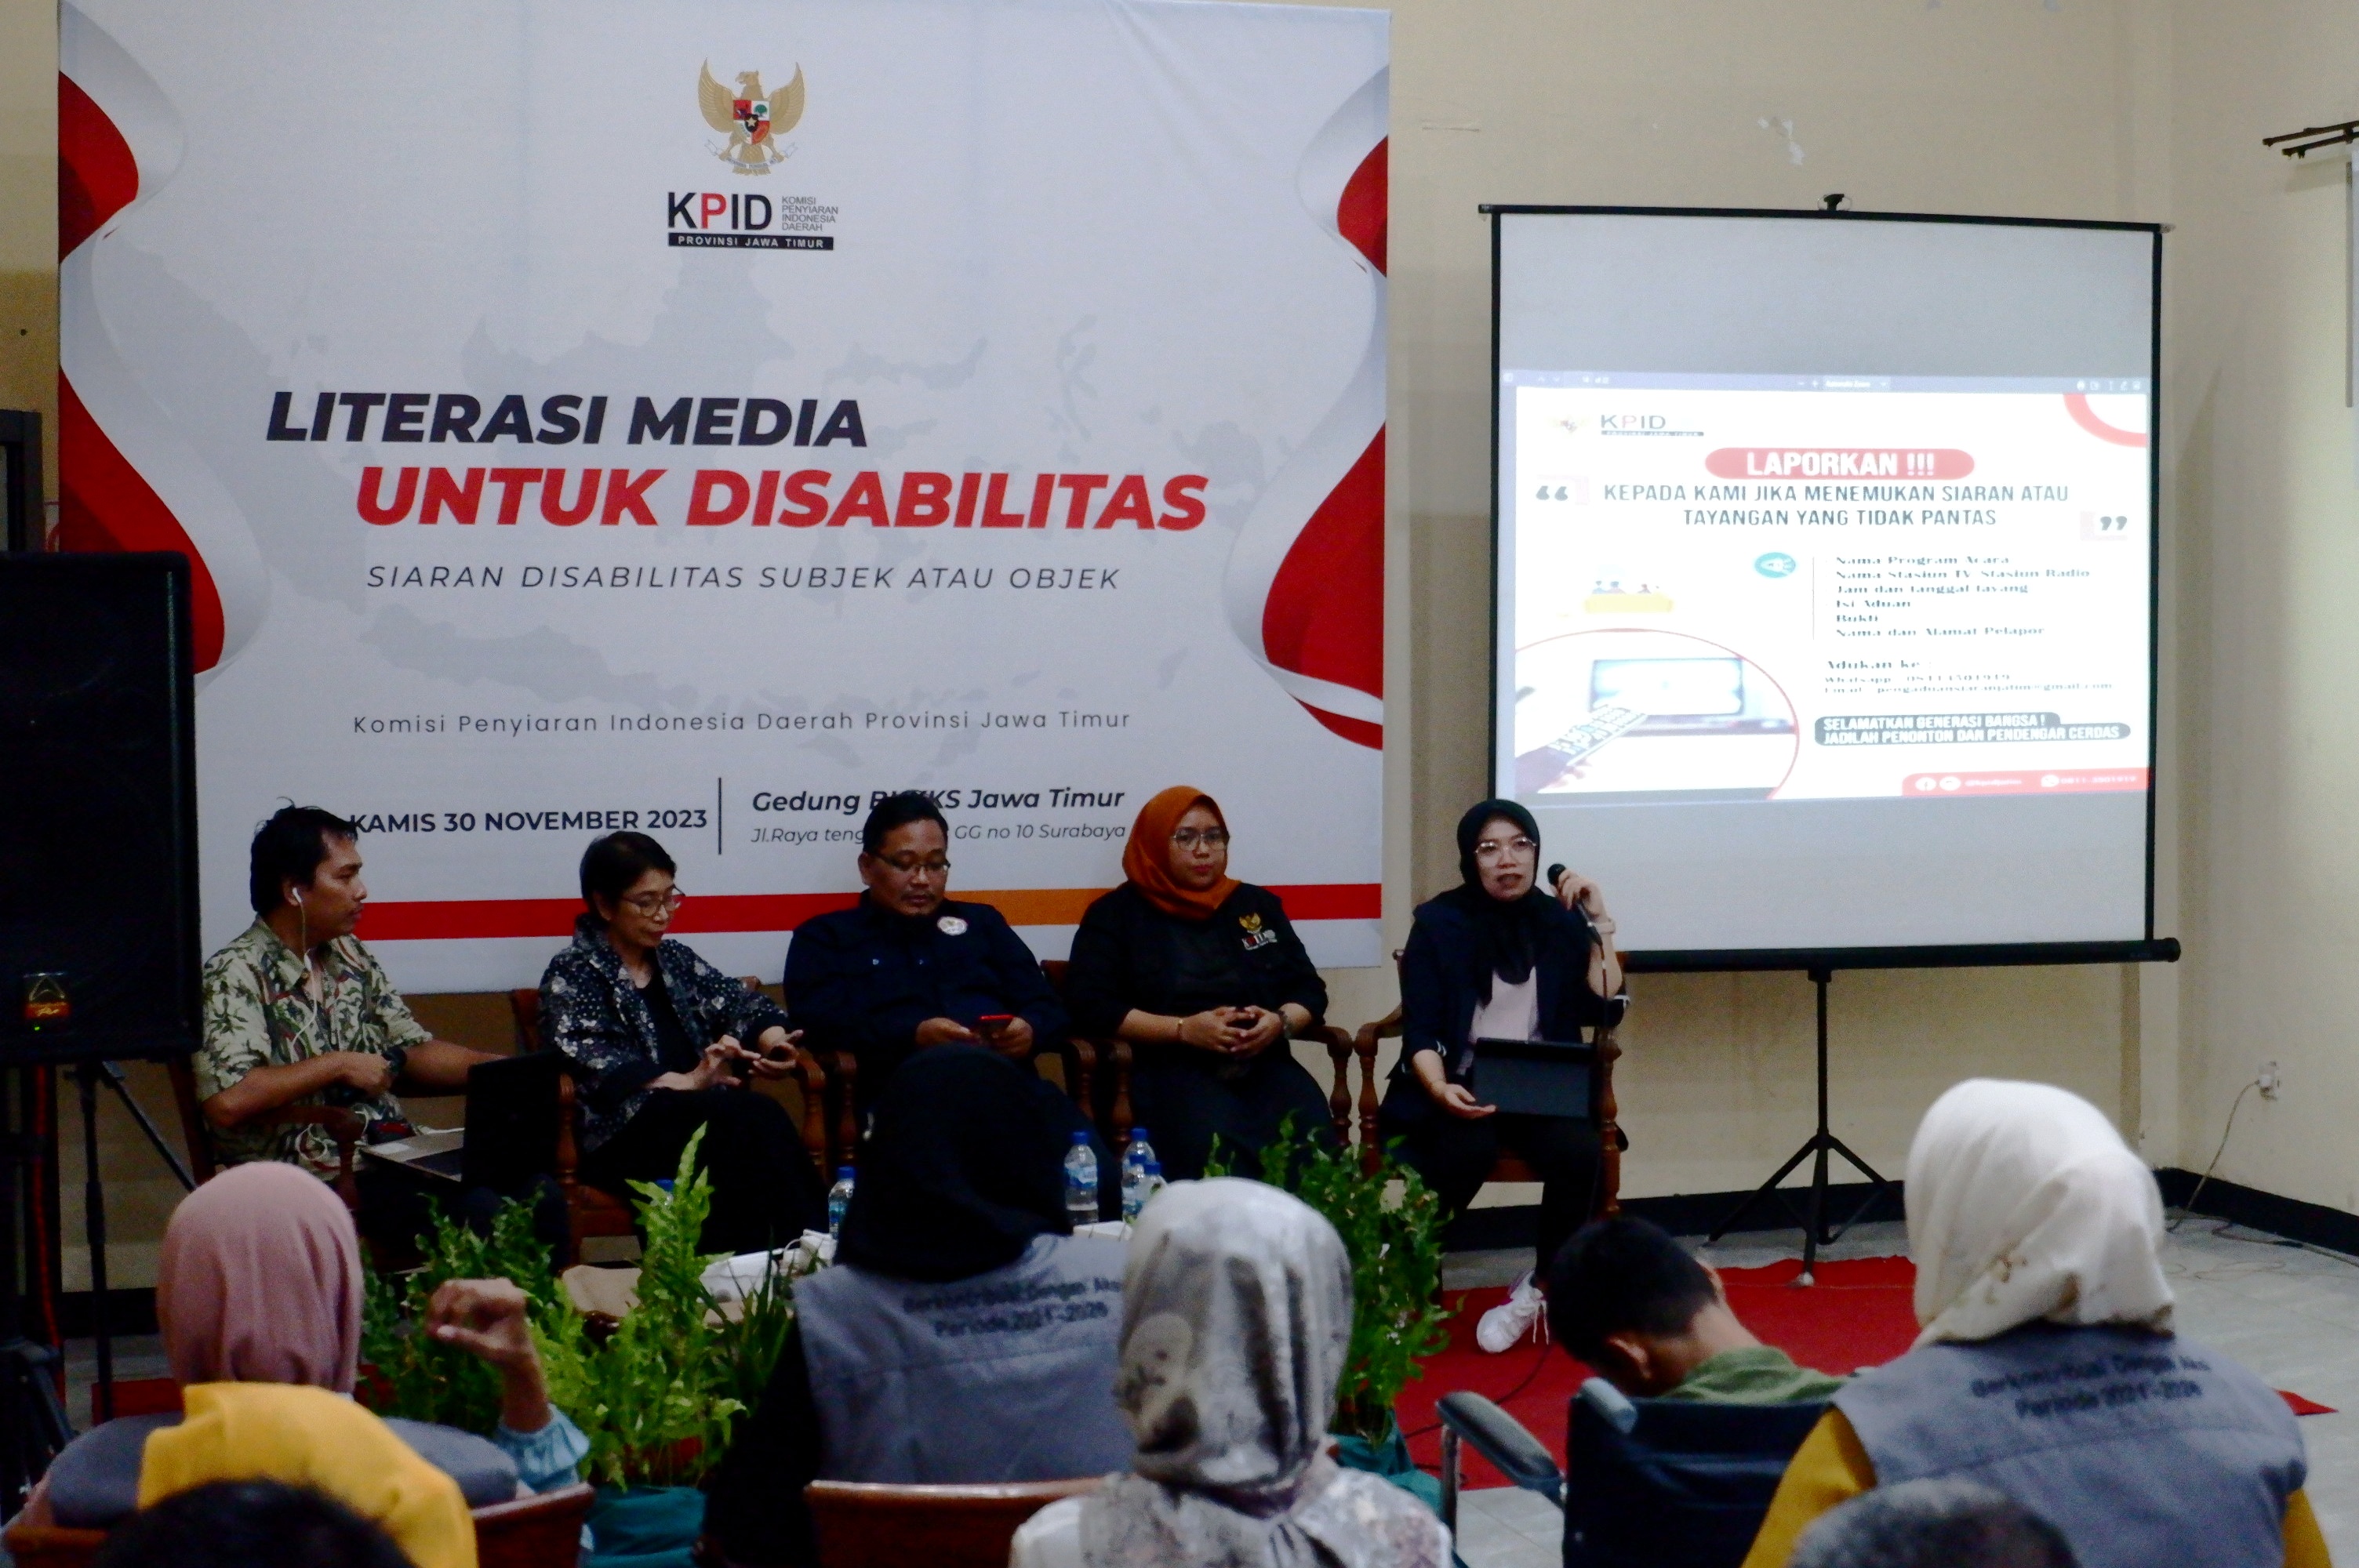 Sampaikan Literasi Media untuk Disabilitas, KPID-BK3S Ingatkan 5 Racun Siaran